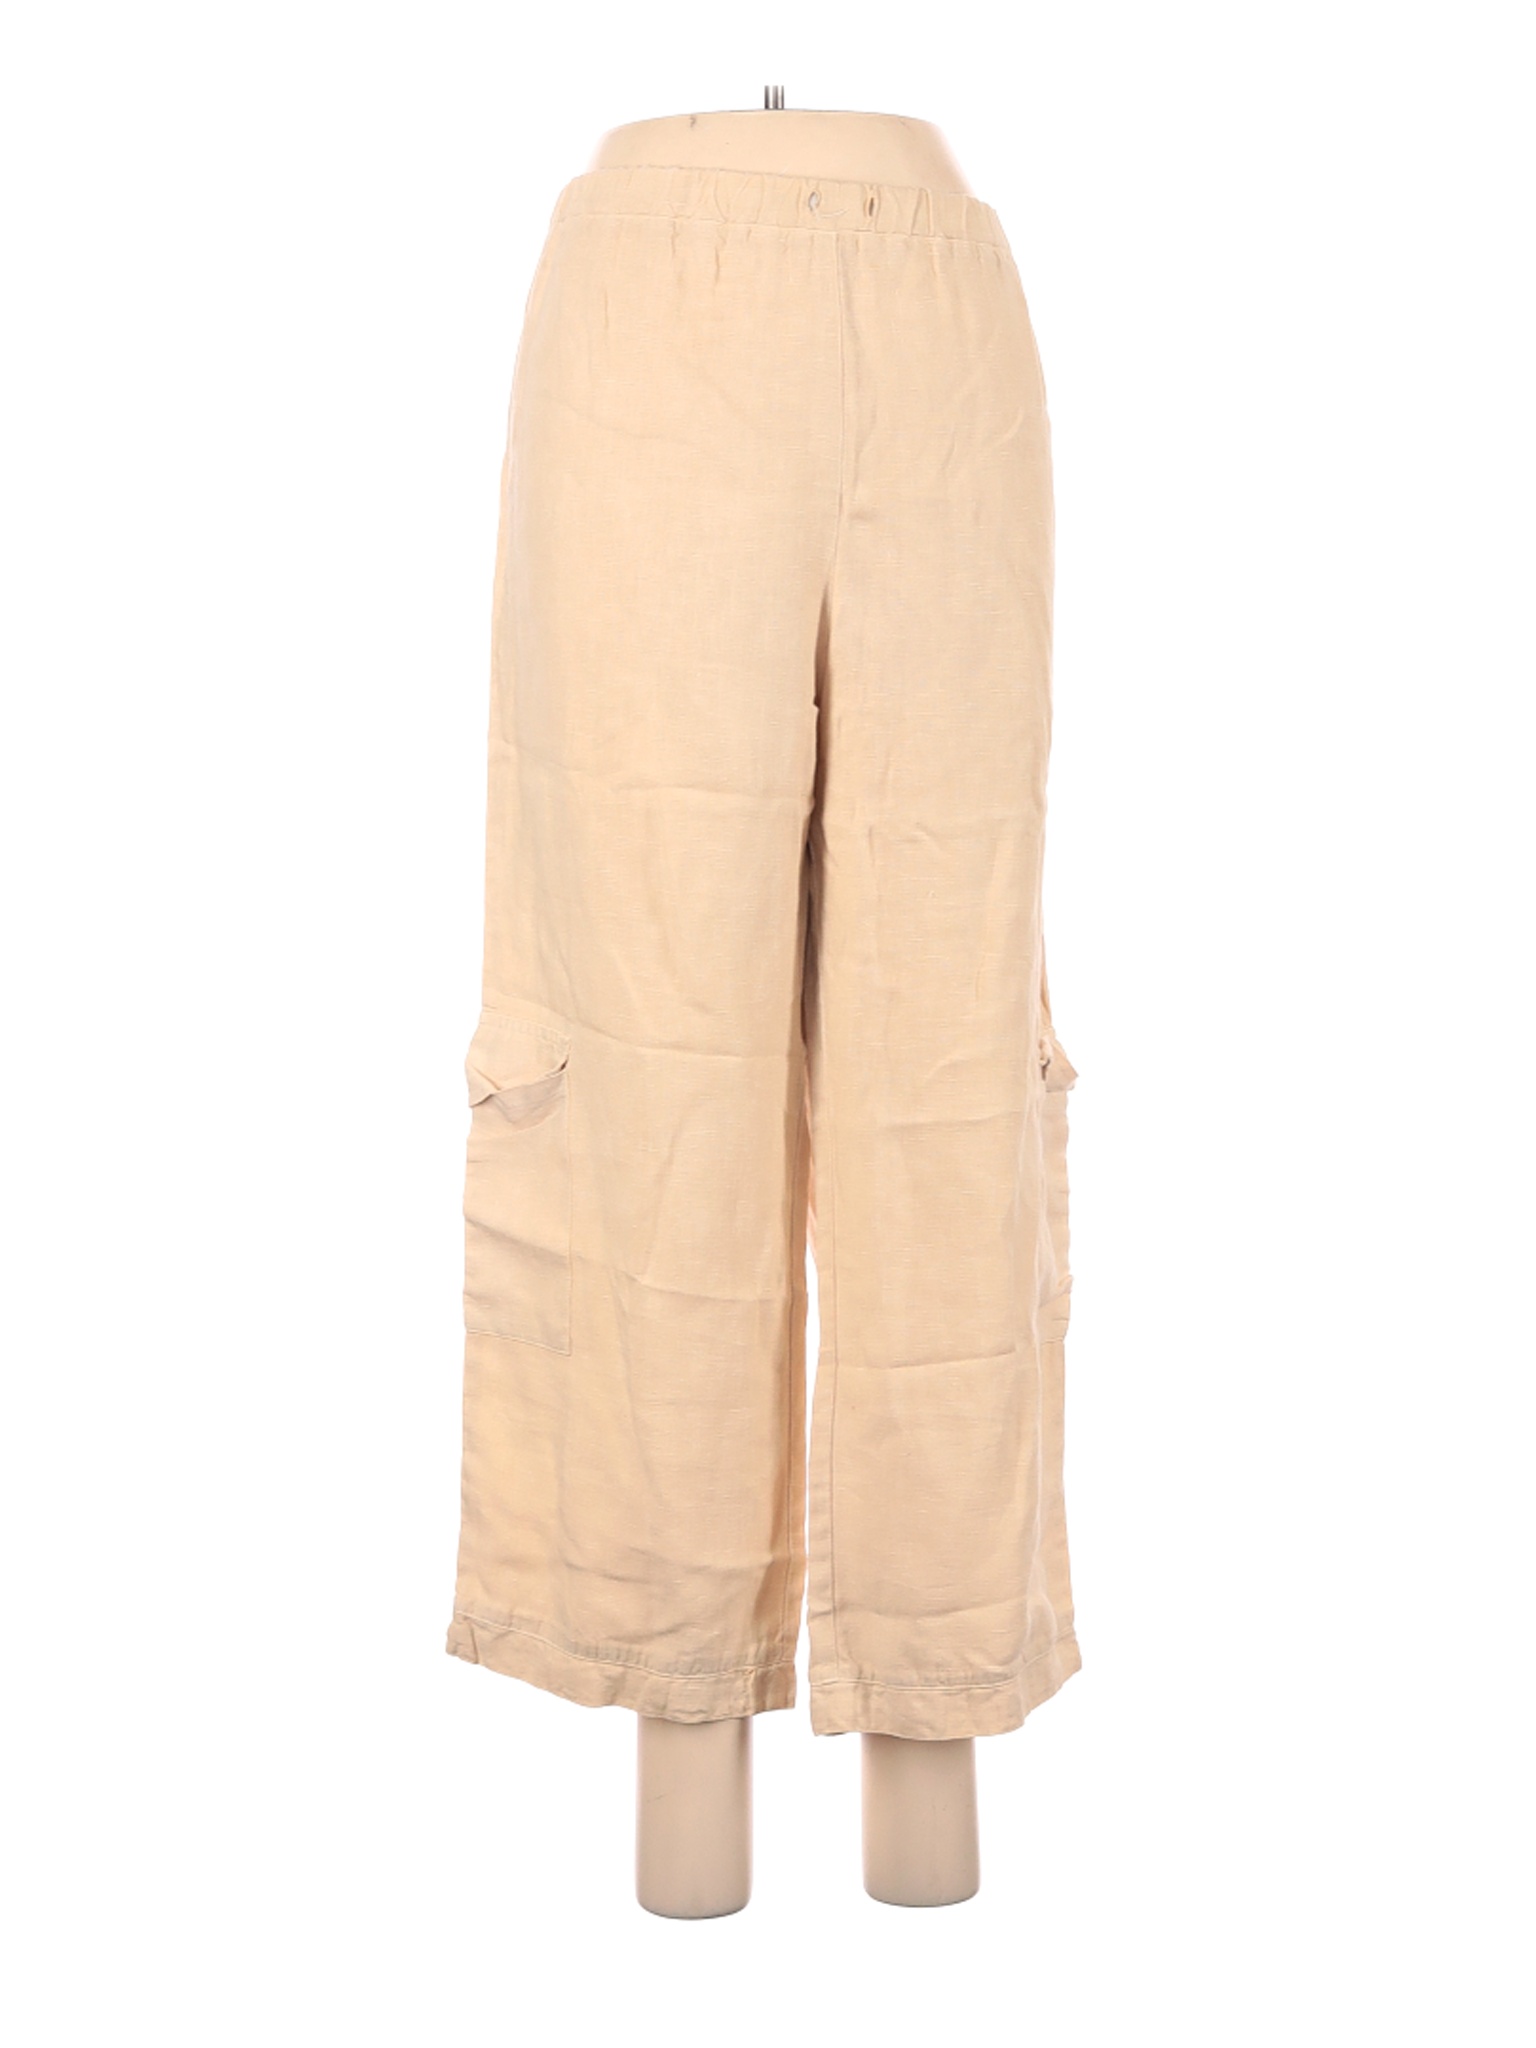 Habitat Women Brown Linen Pants M | eBay